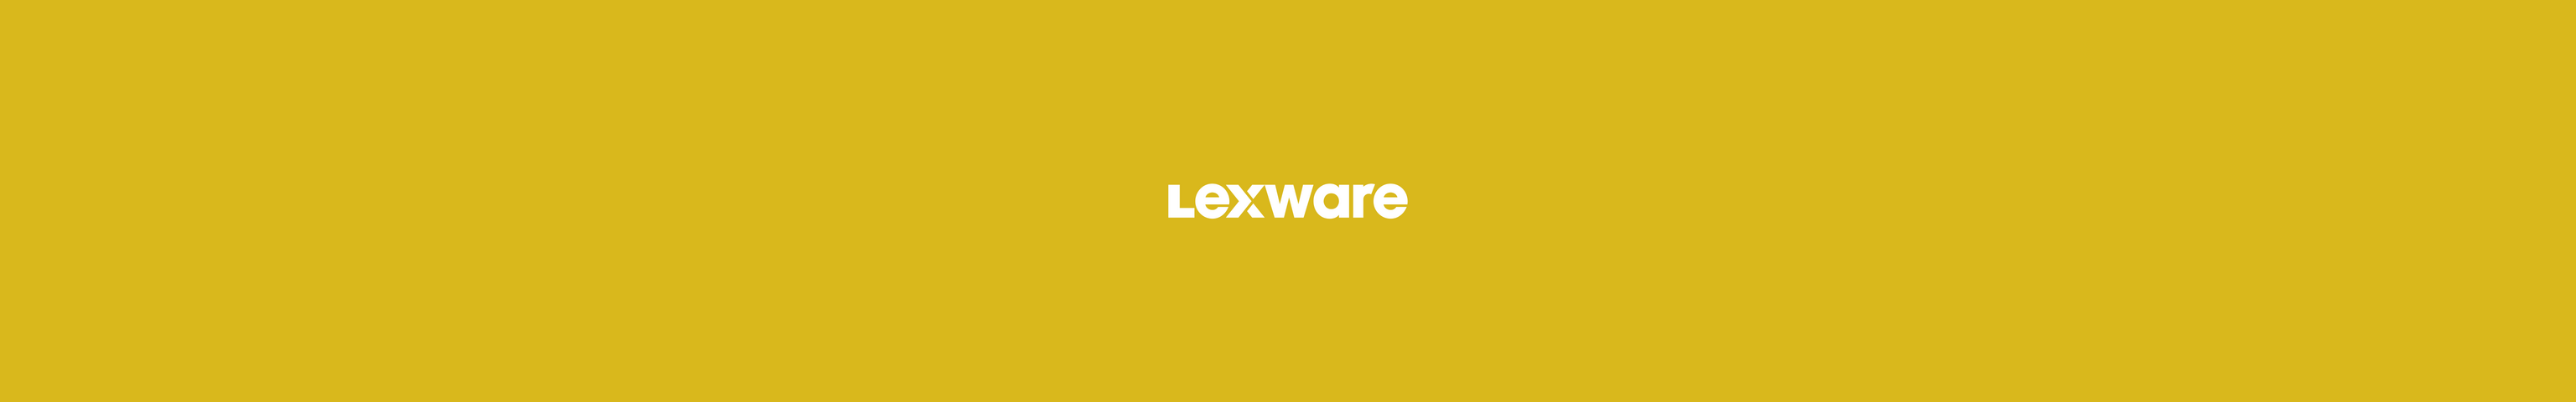 Lexware Logo auf gelbem Hintergrund